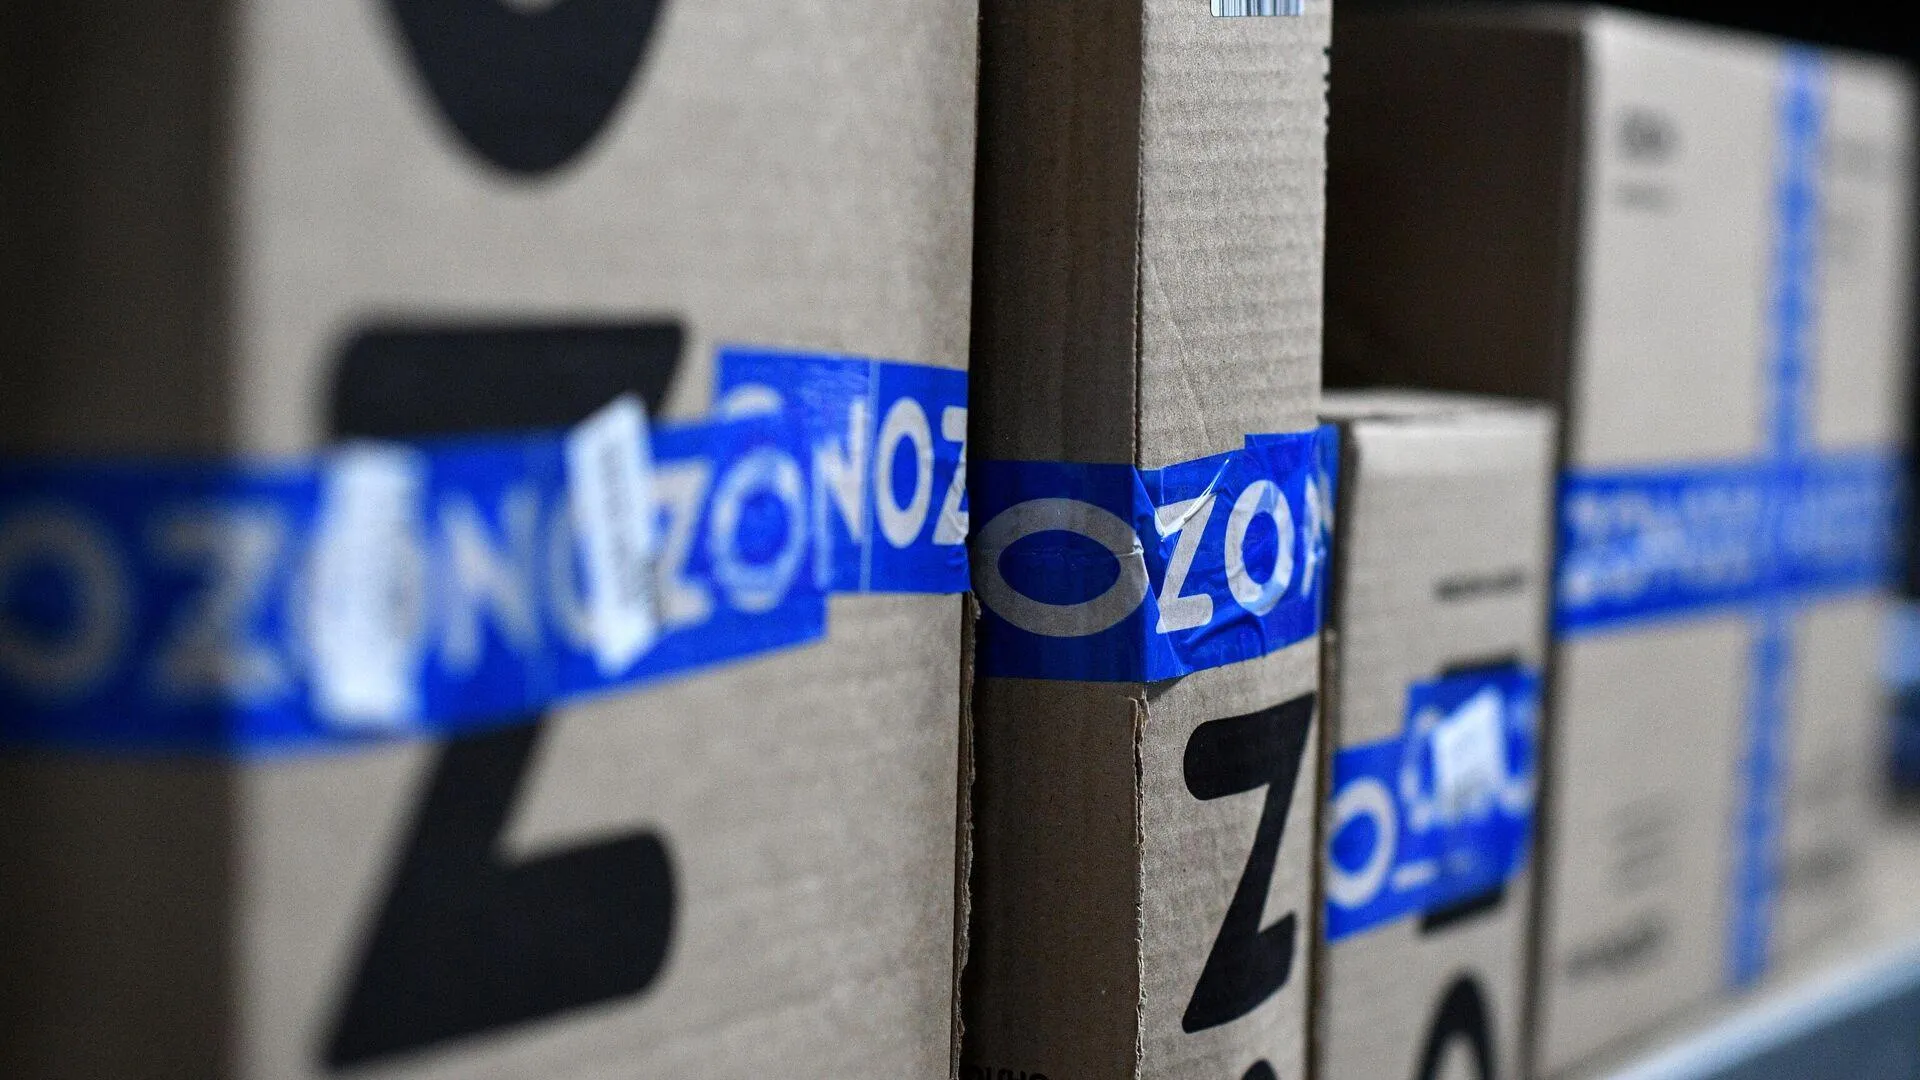 Ozon опроверг слухи о массовом закрытии пунктов выдачи заказов